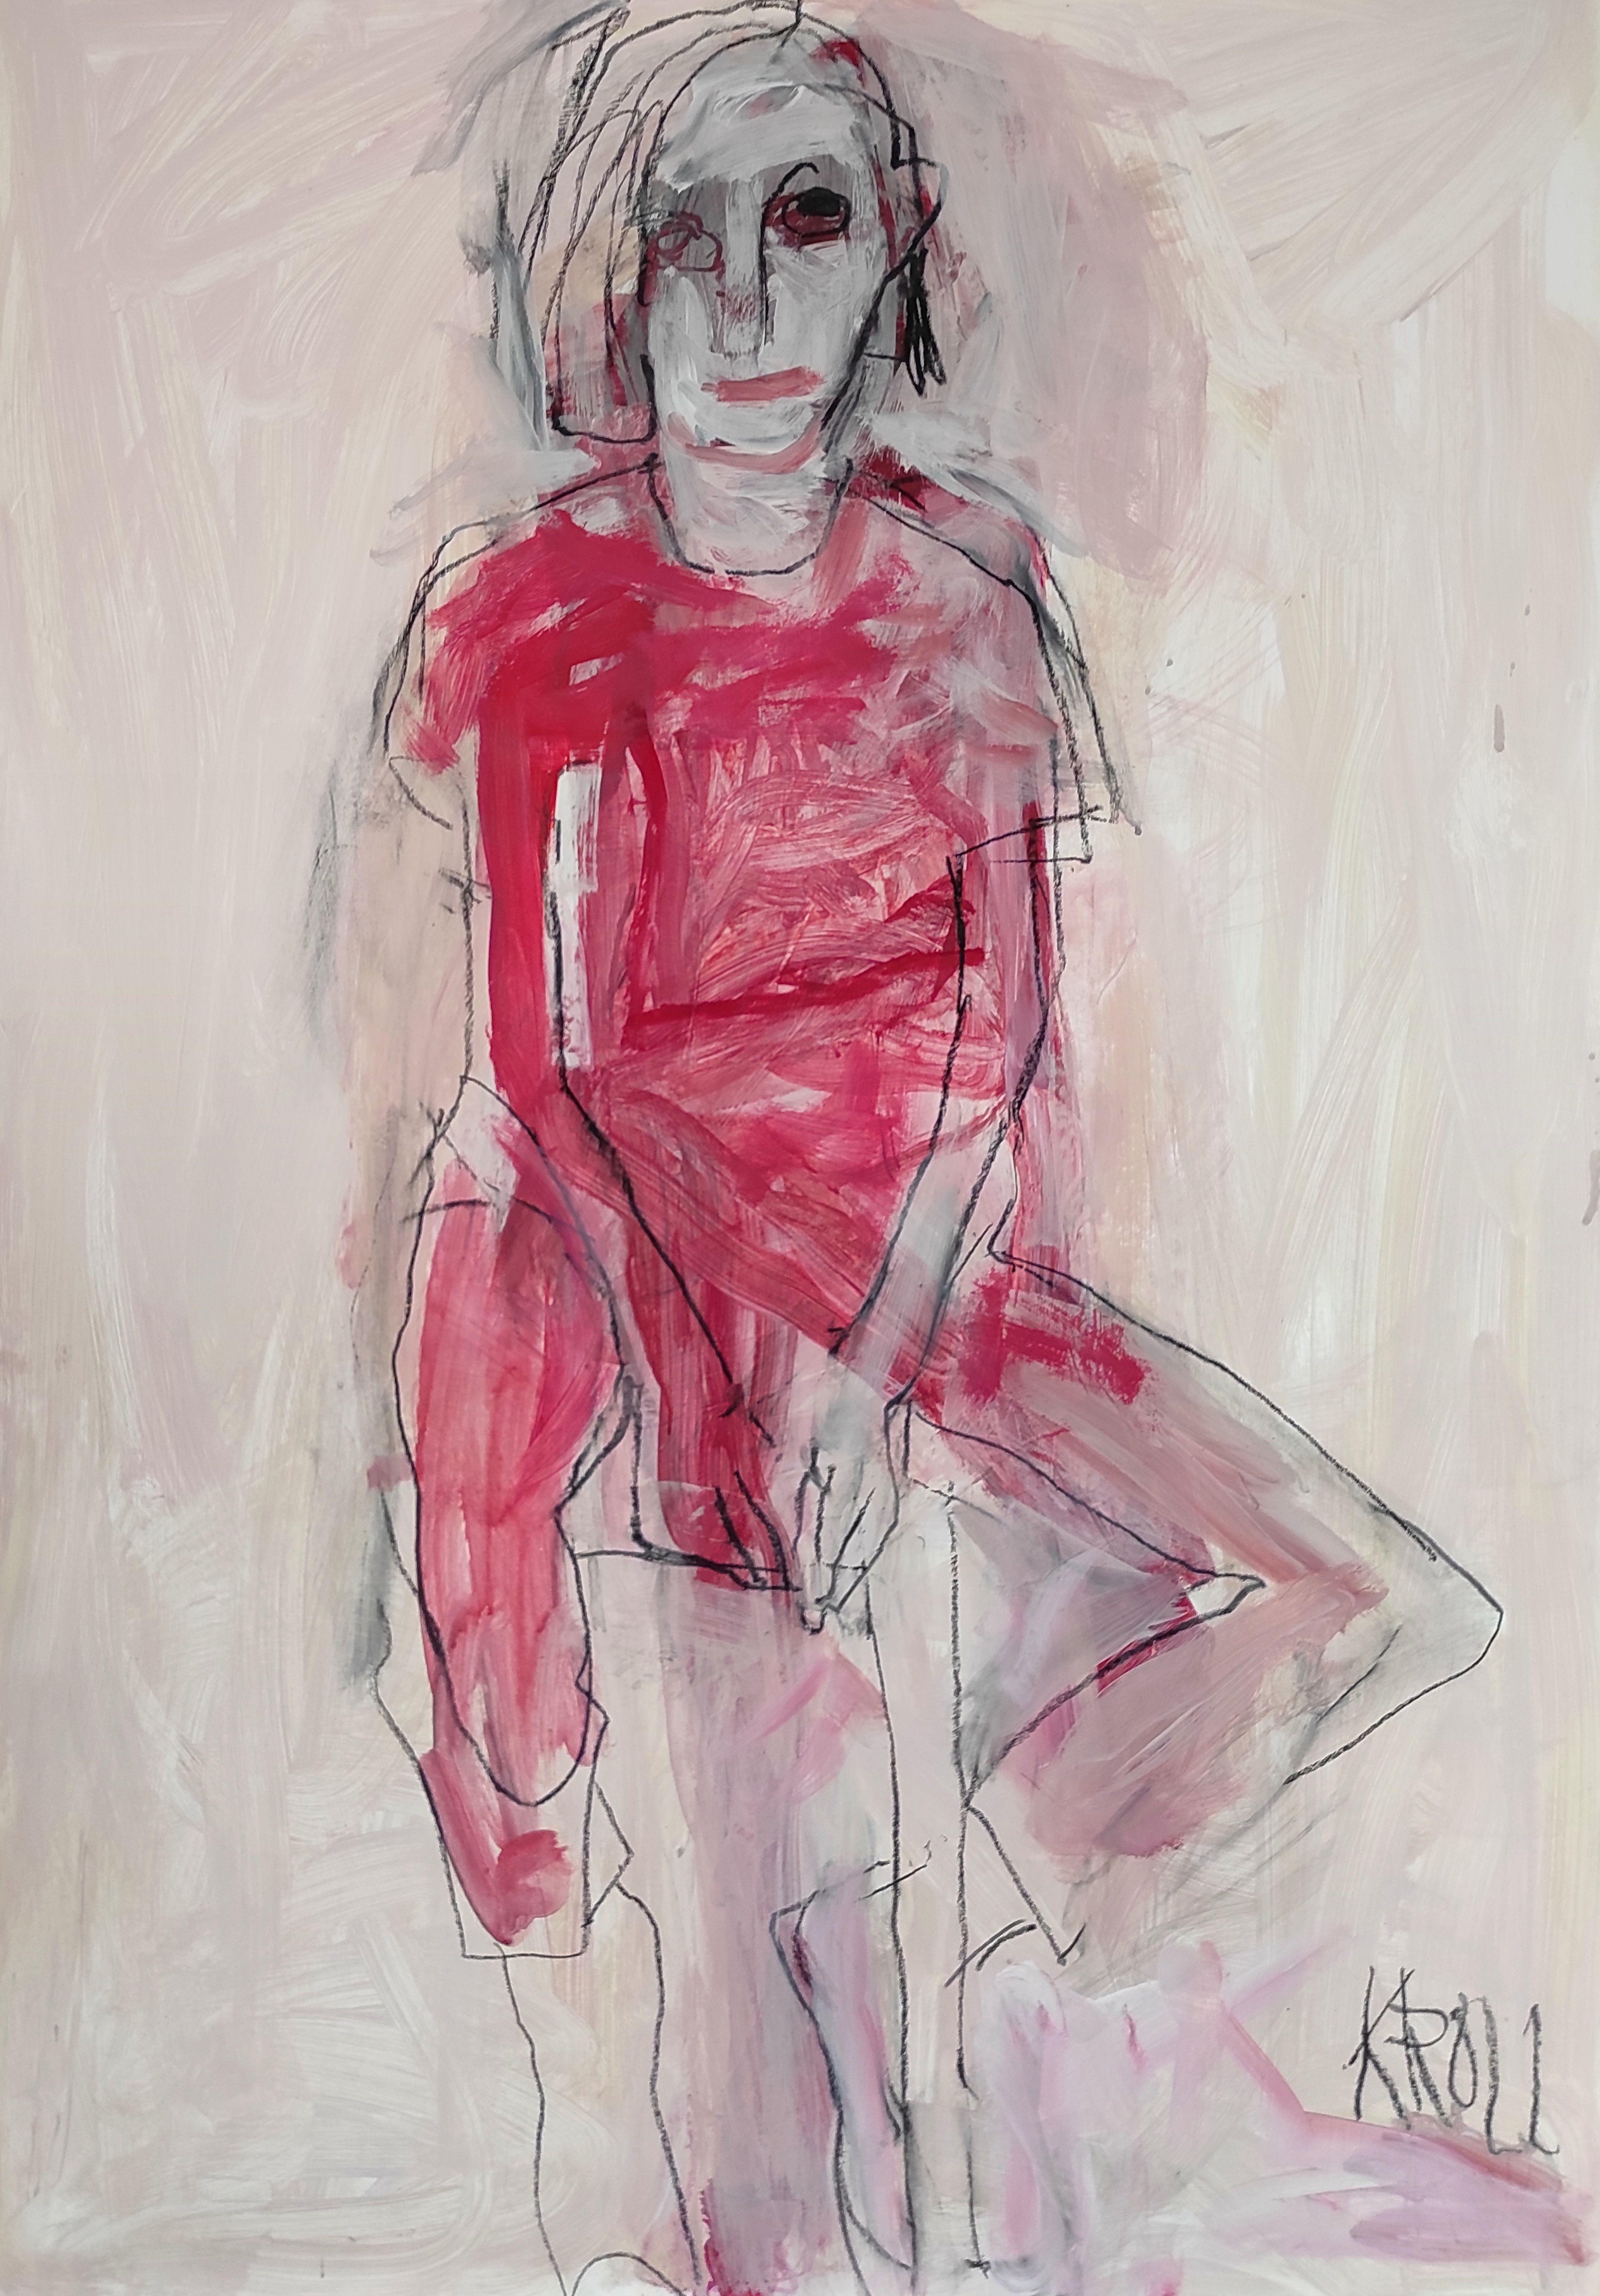 Femme assise en robe rouge, dessin, crayon/crayon coloré sur papier - Art de Barbara Kroll